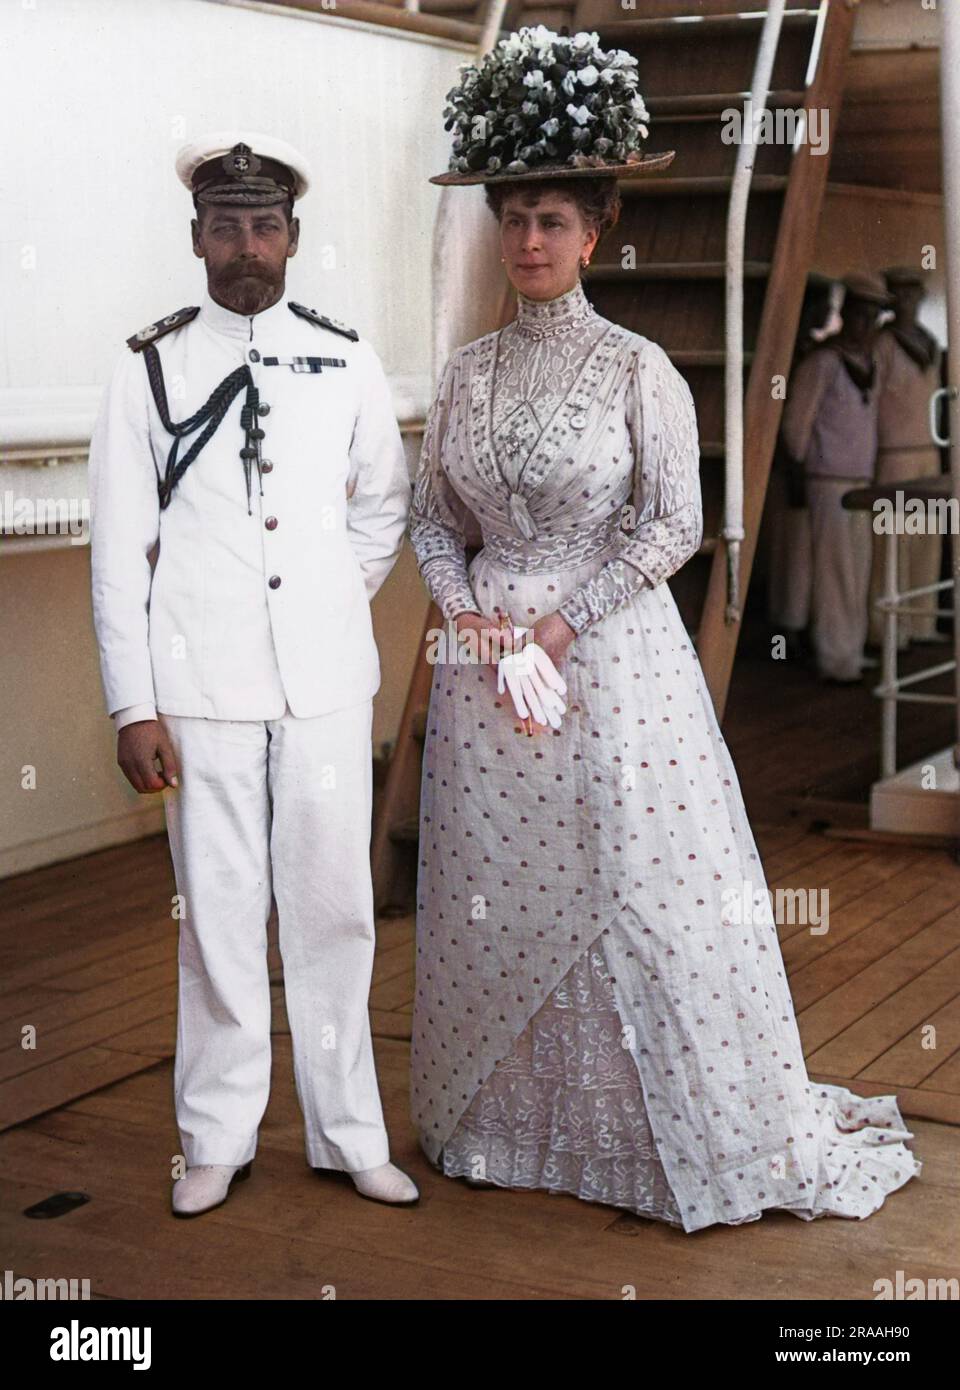 Porträtfoto von König George V. in Marineuniform und seiner Frau, Königin Mary von Teck. Datum: C. 1910er Stockfoto